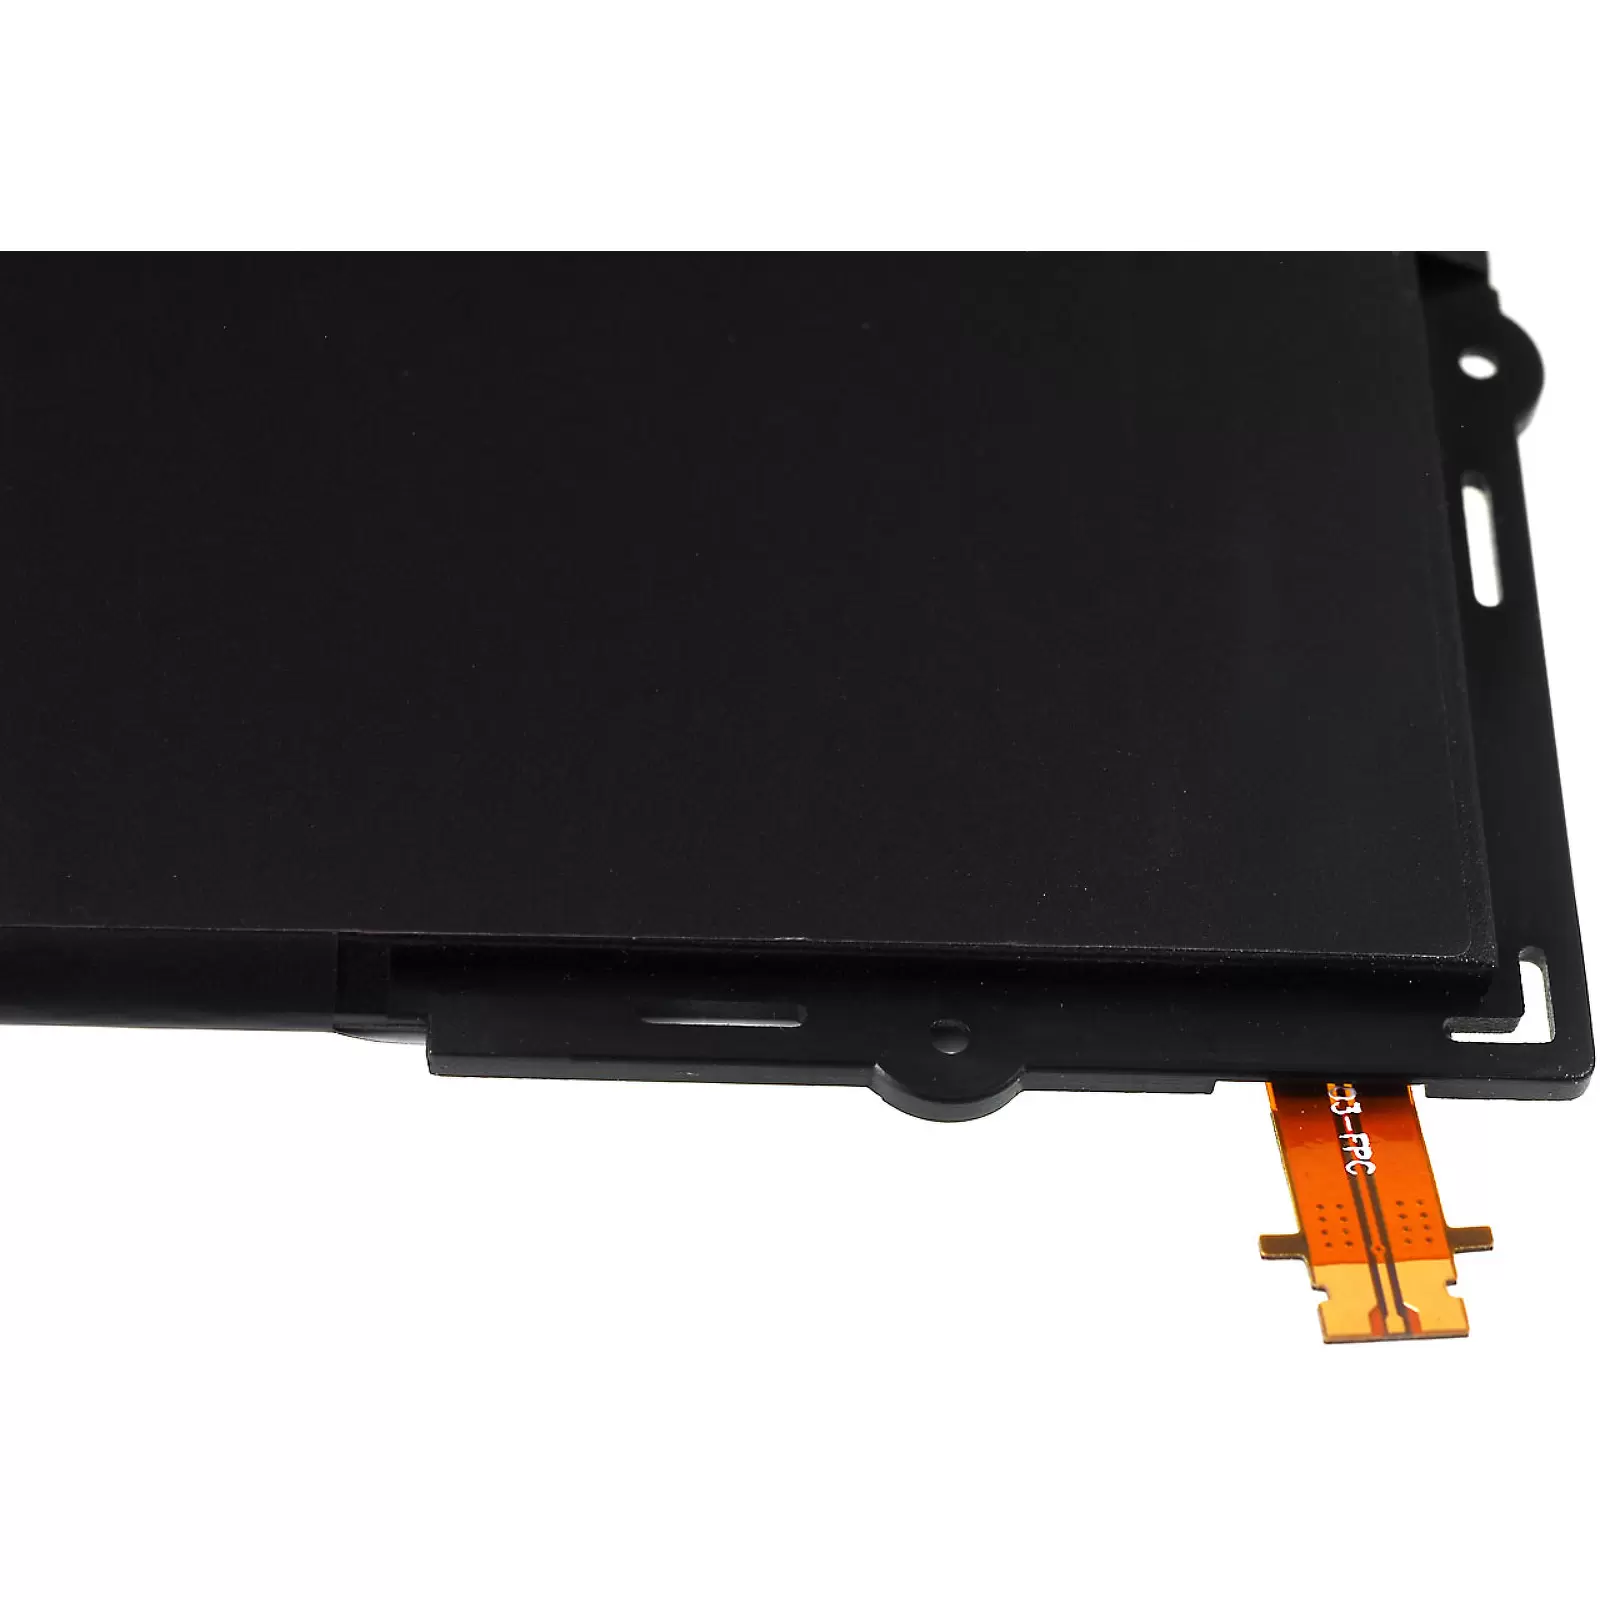 Akku für Tablet Samsung Galaxy Tab A 10.1 2016 / Galaxy Tab E 10.1 / Typ EB-BT585ABE